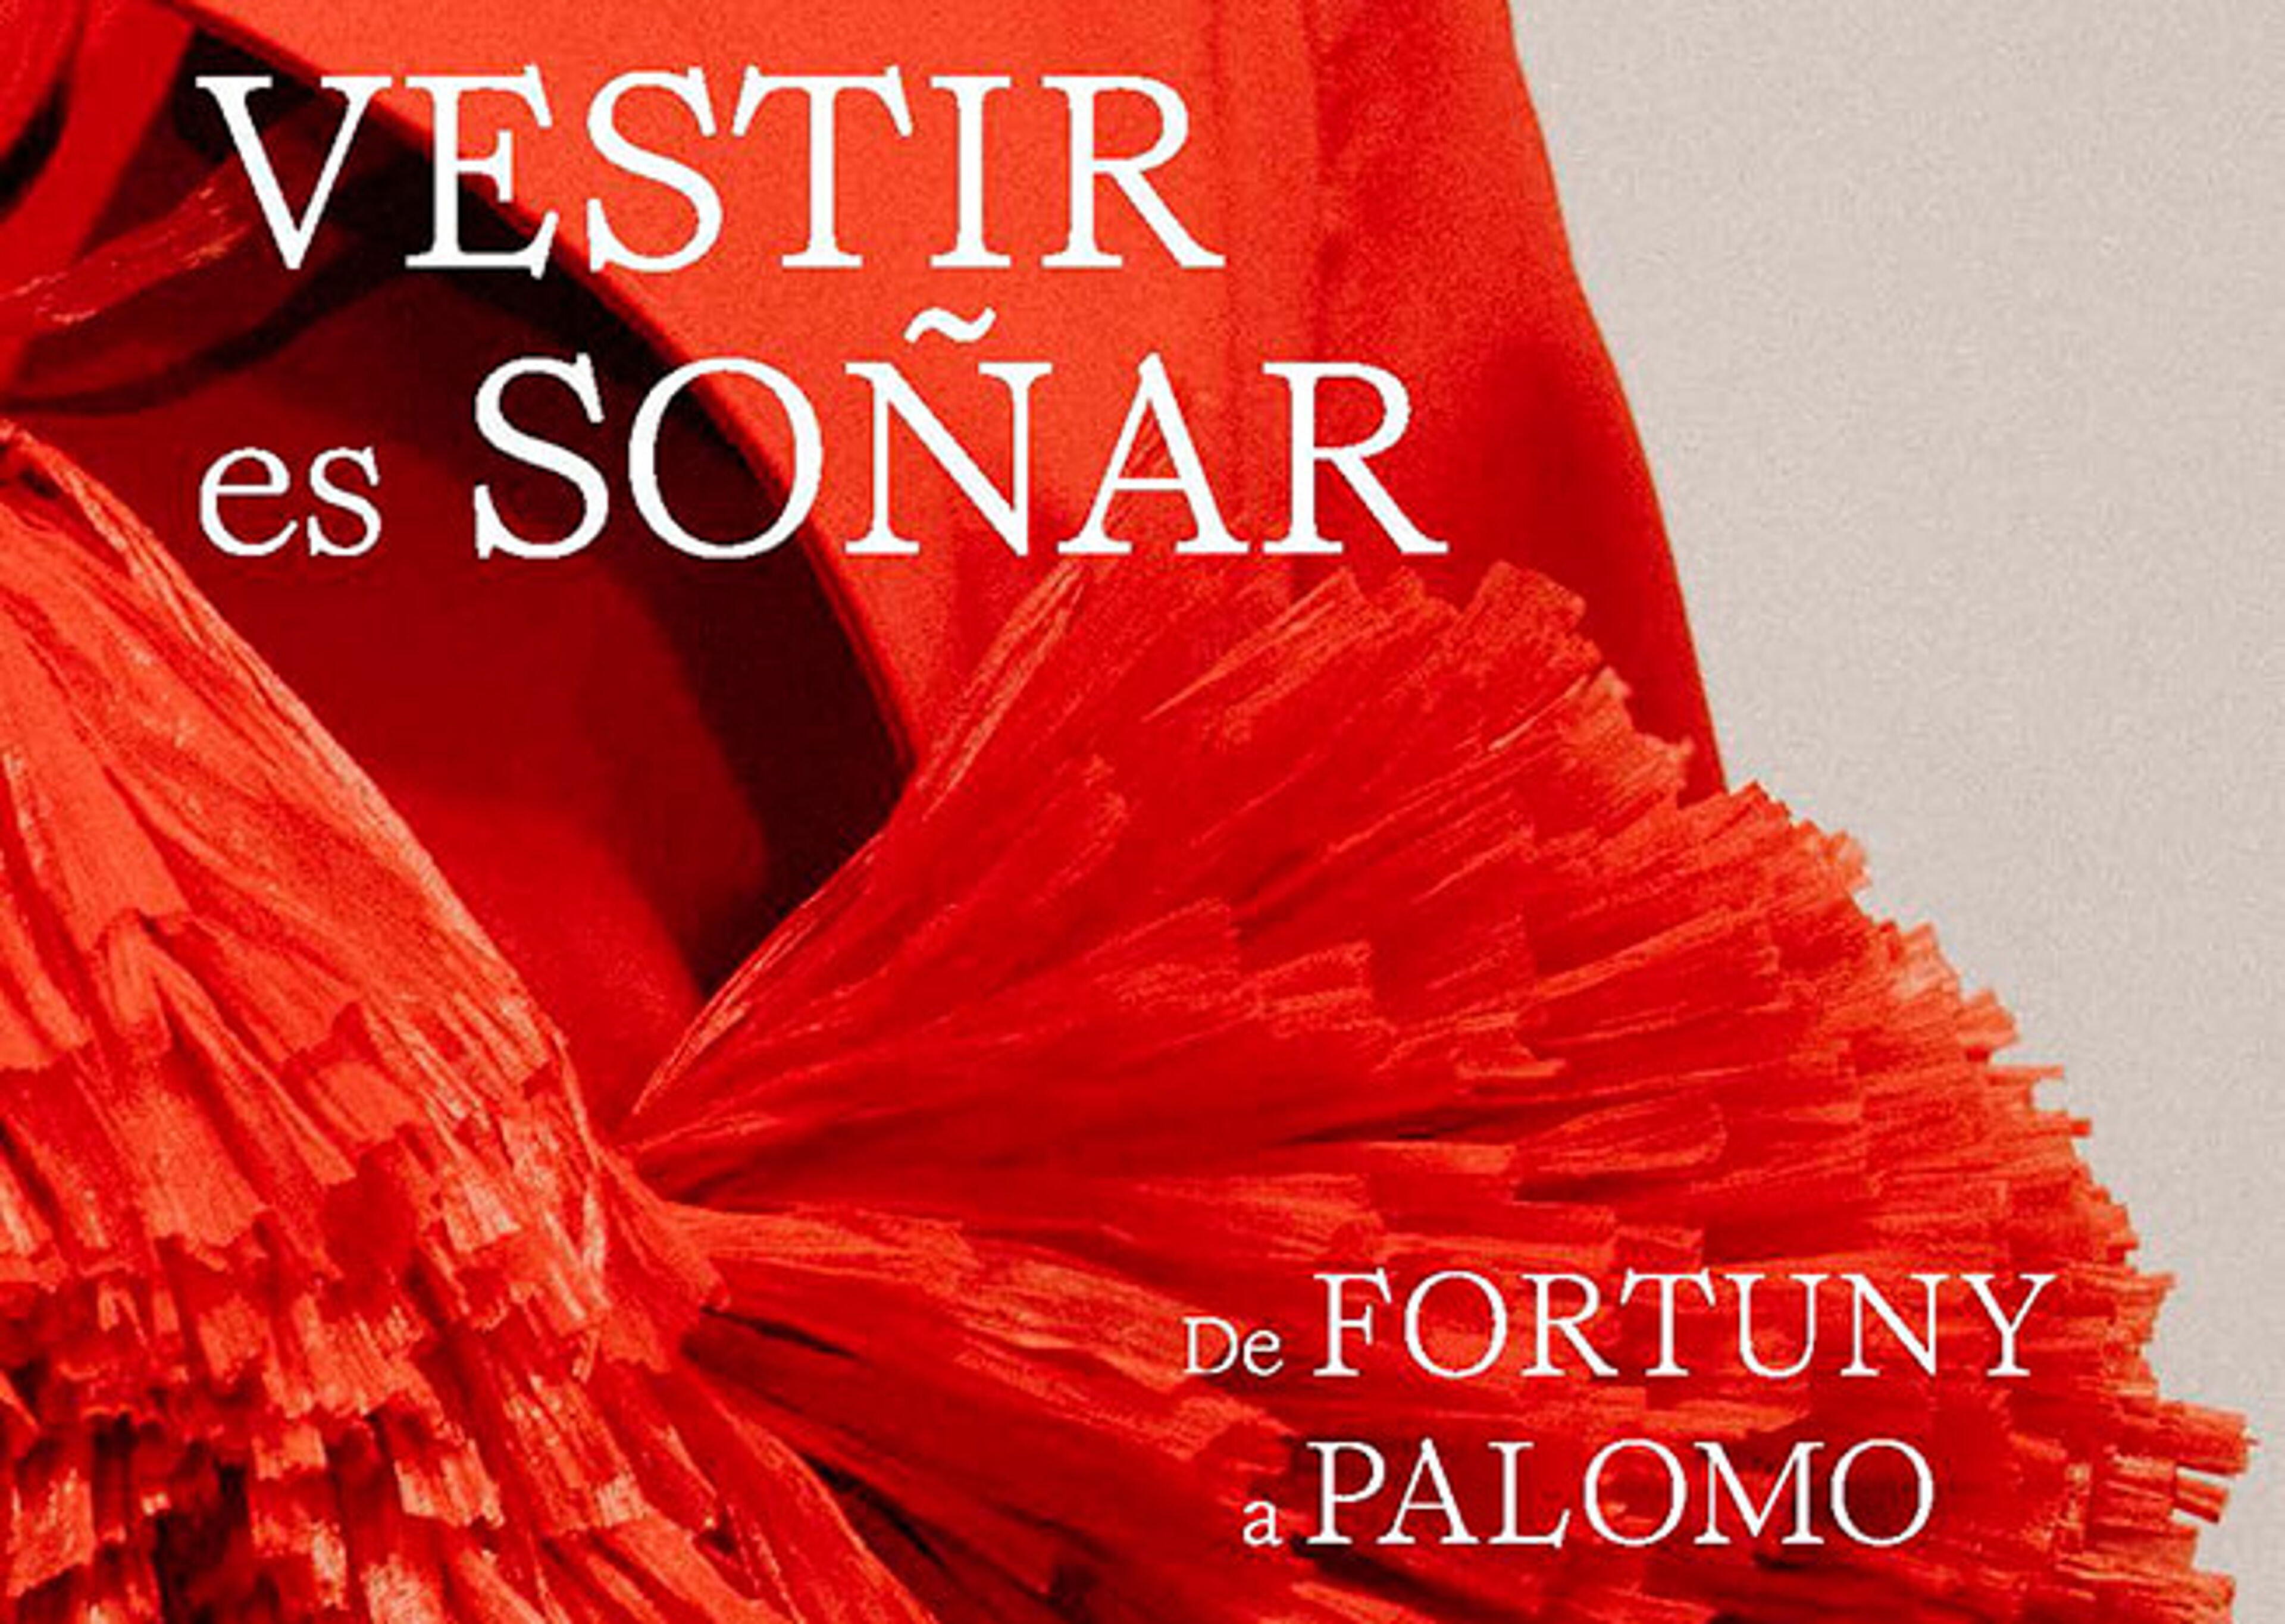 Un póster vívido para una exposición de moda, "VESTIR es SOÑAR", que muestra un detalle de tela roja rica con texto que atribuye el trabajo de "FORTUNY a PALOMO".